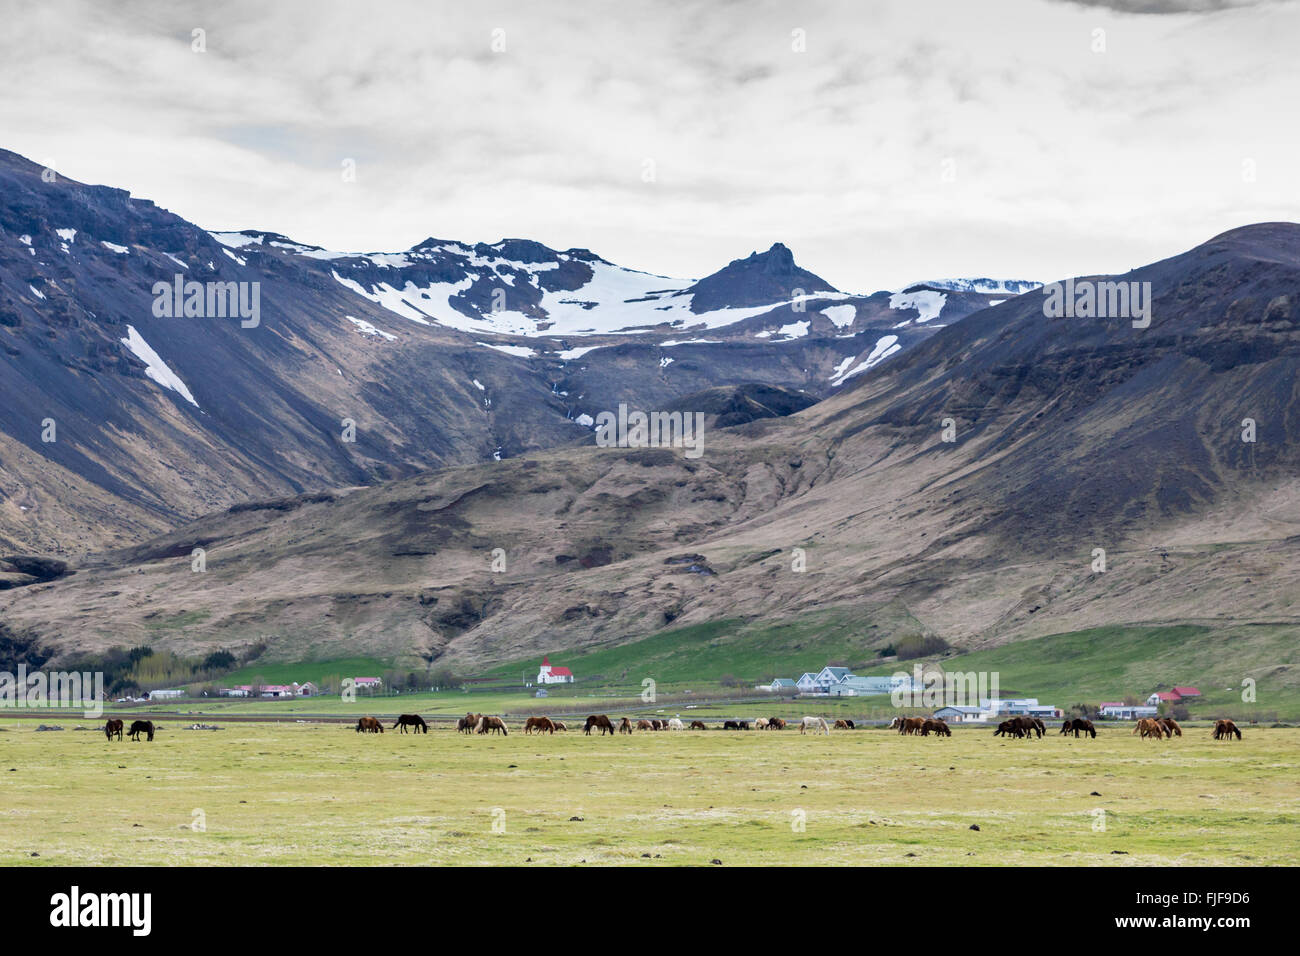 Chevaux islandais, Equus ferus caballus, dans le champ en Islande avec des montagnes enneigées Banque D'Images